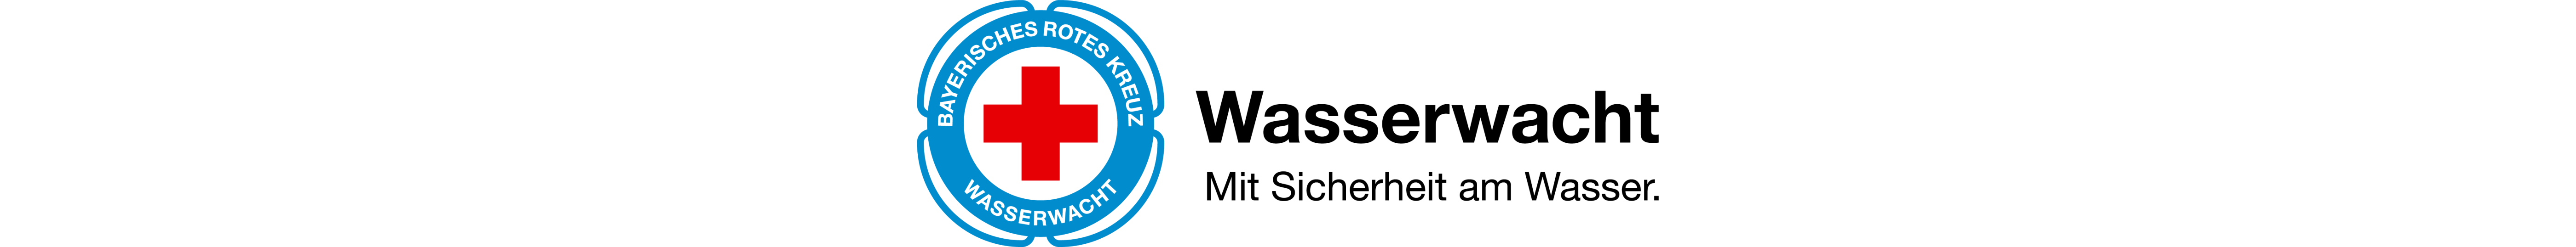 WW Logo Header schmal